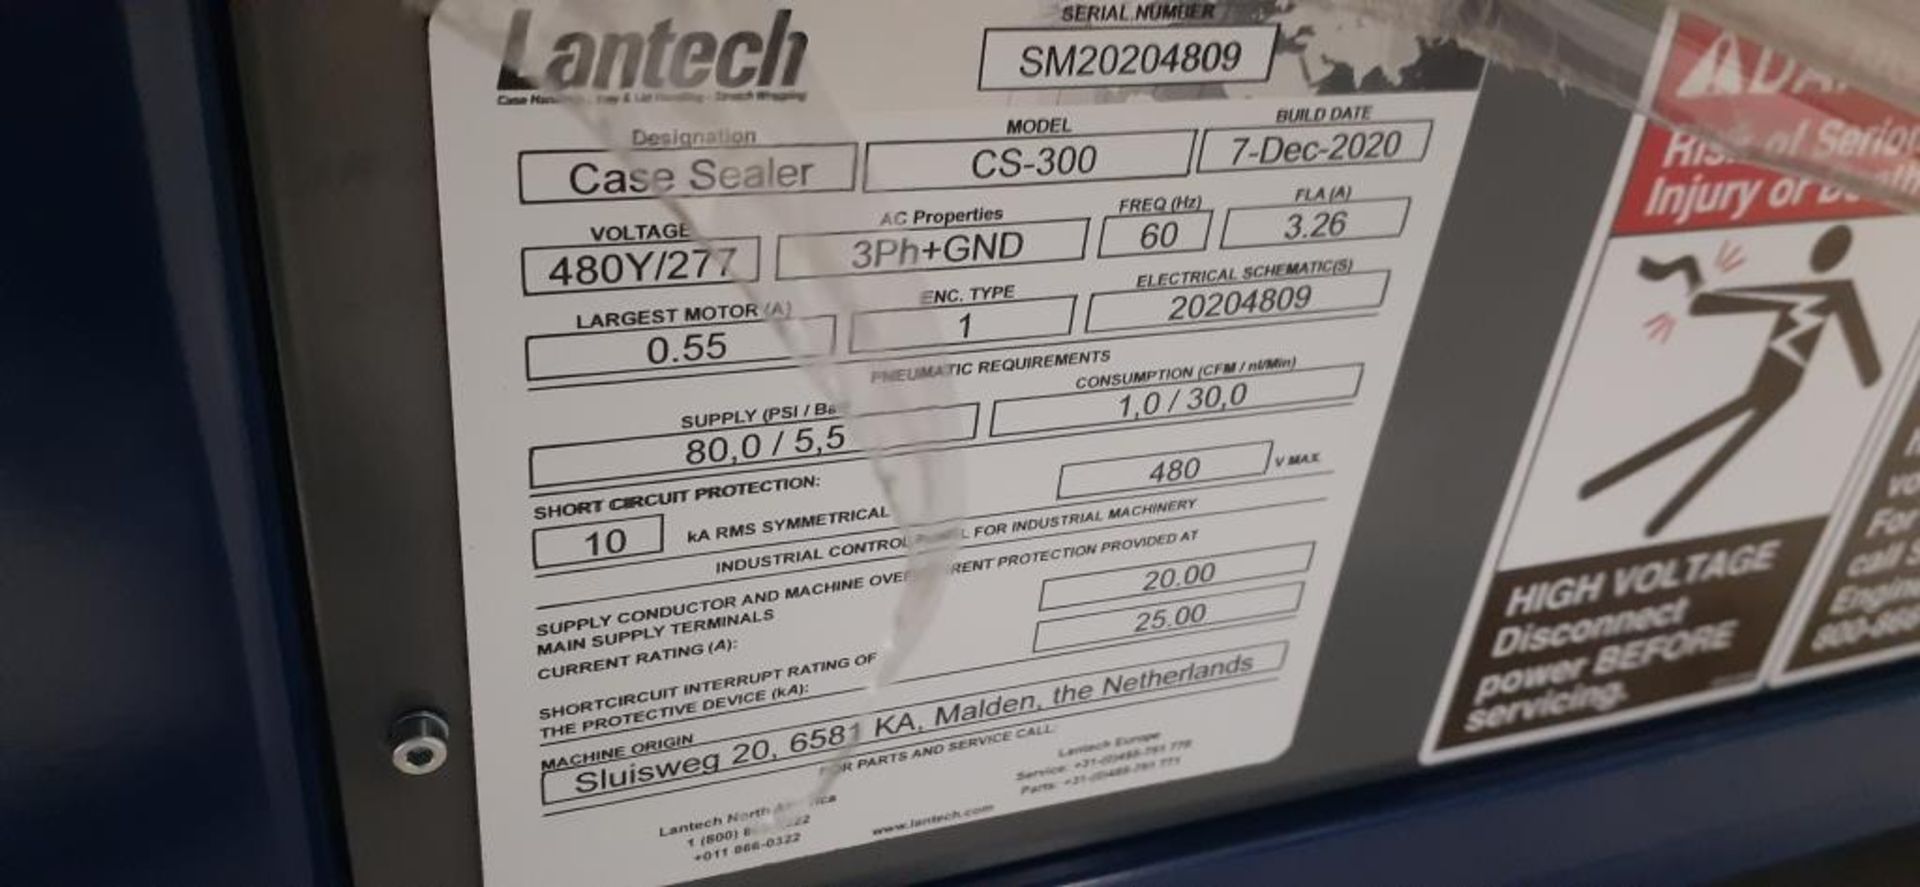 Lantech Case Sealer - Image 7 of 8